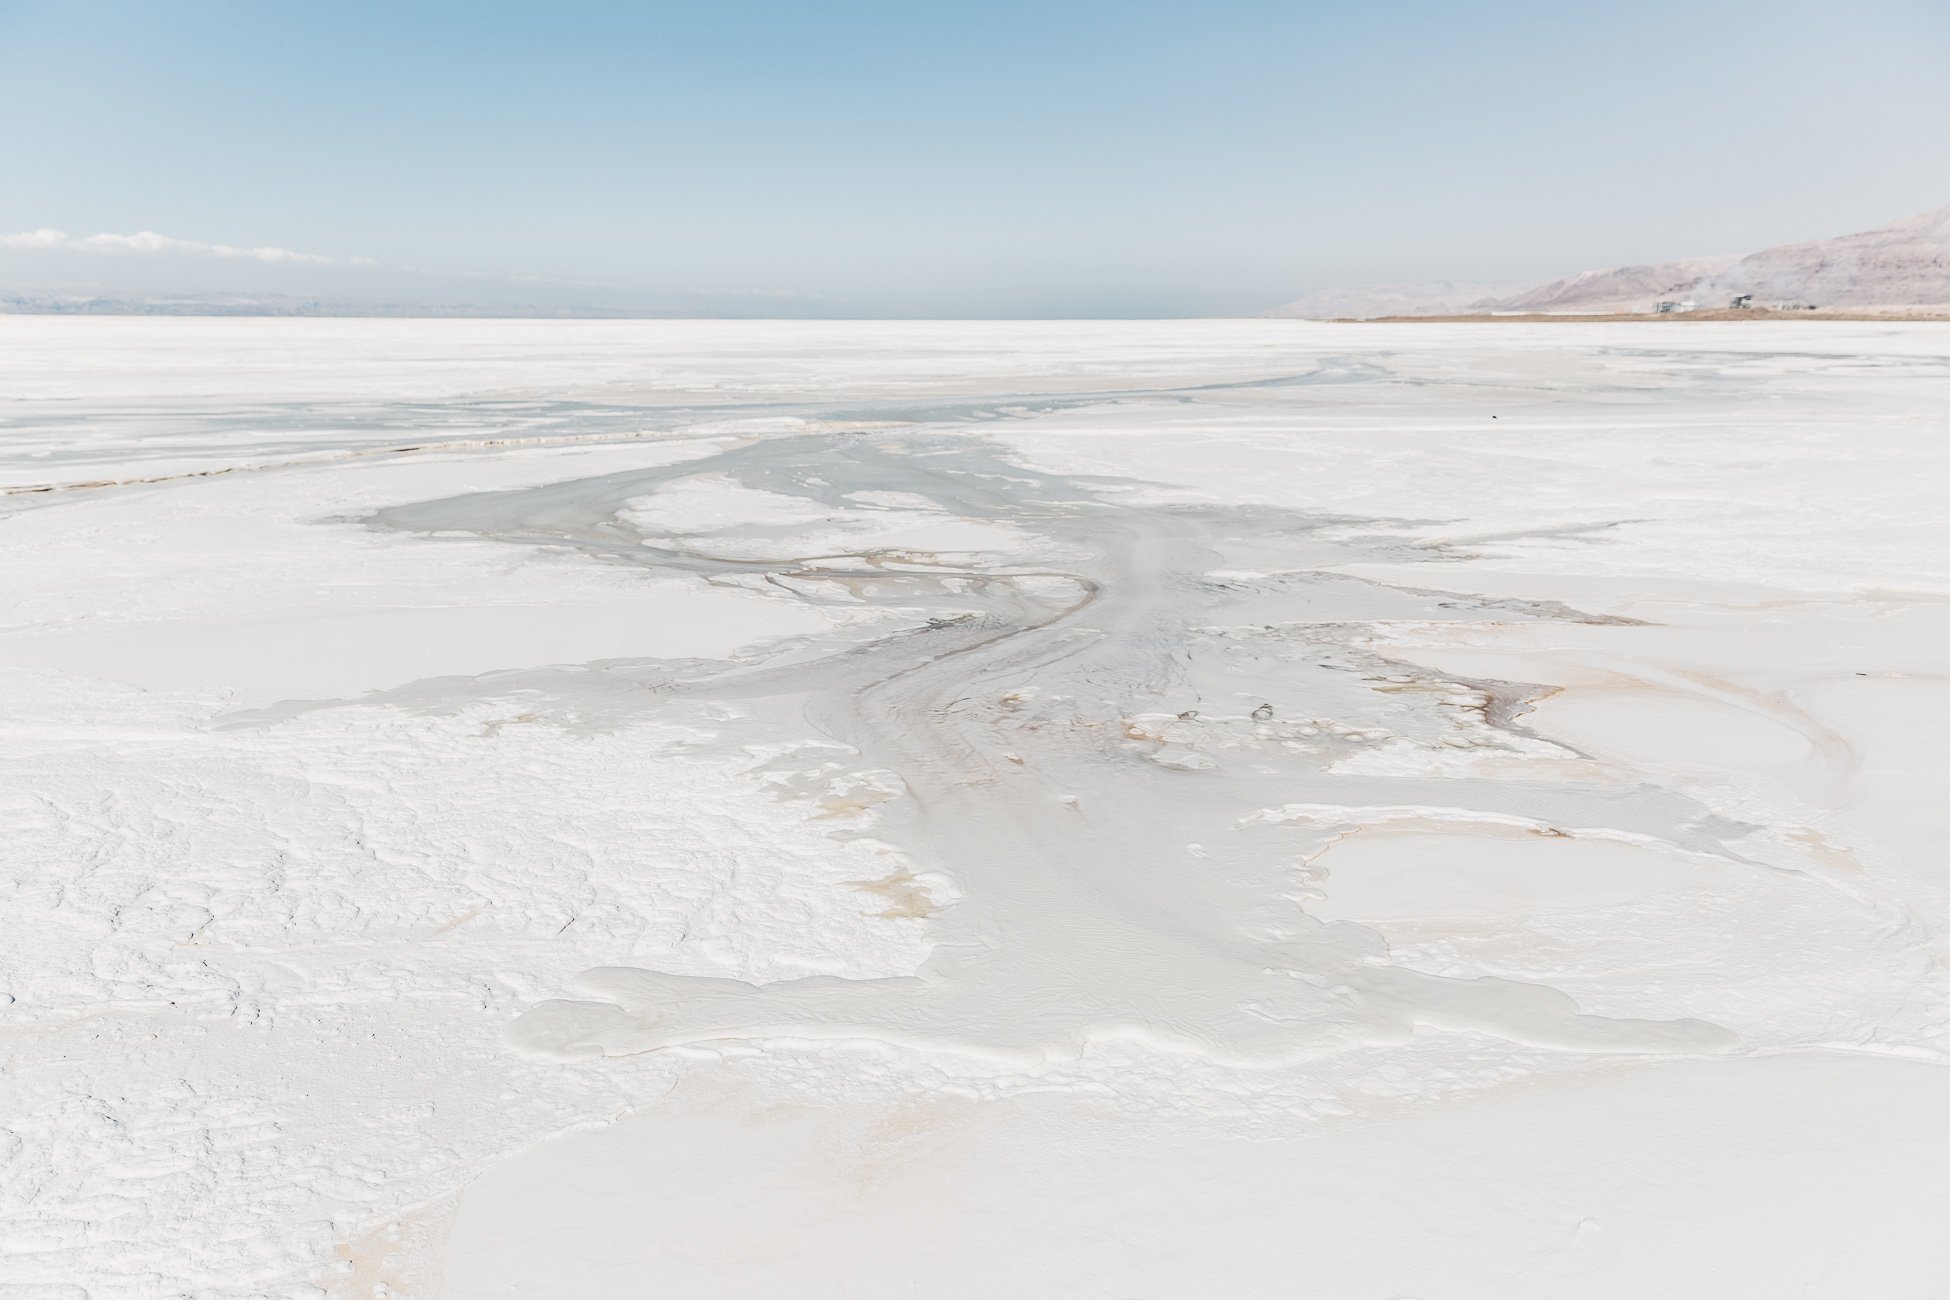 Shores of the Dead Sea in Jordan